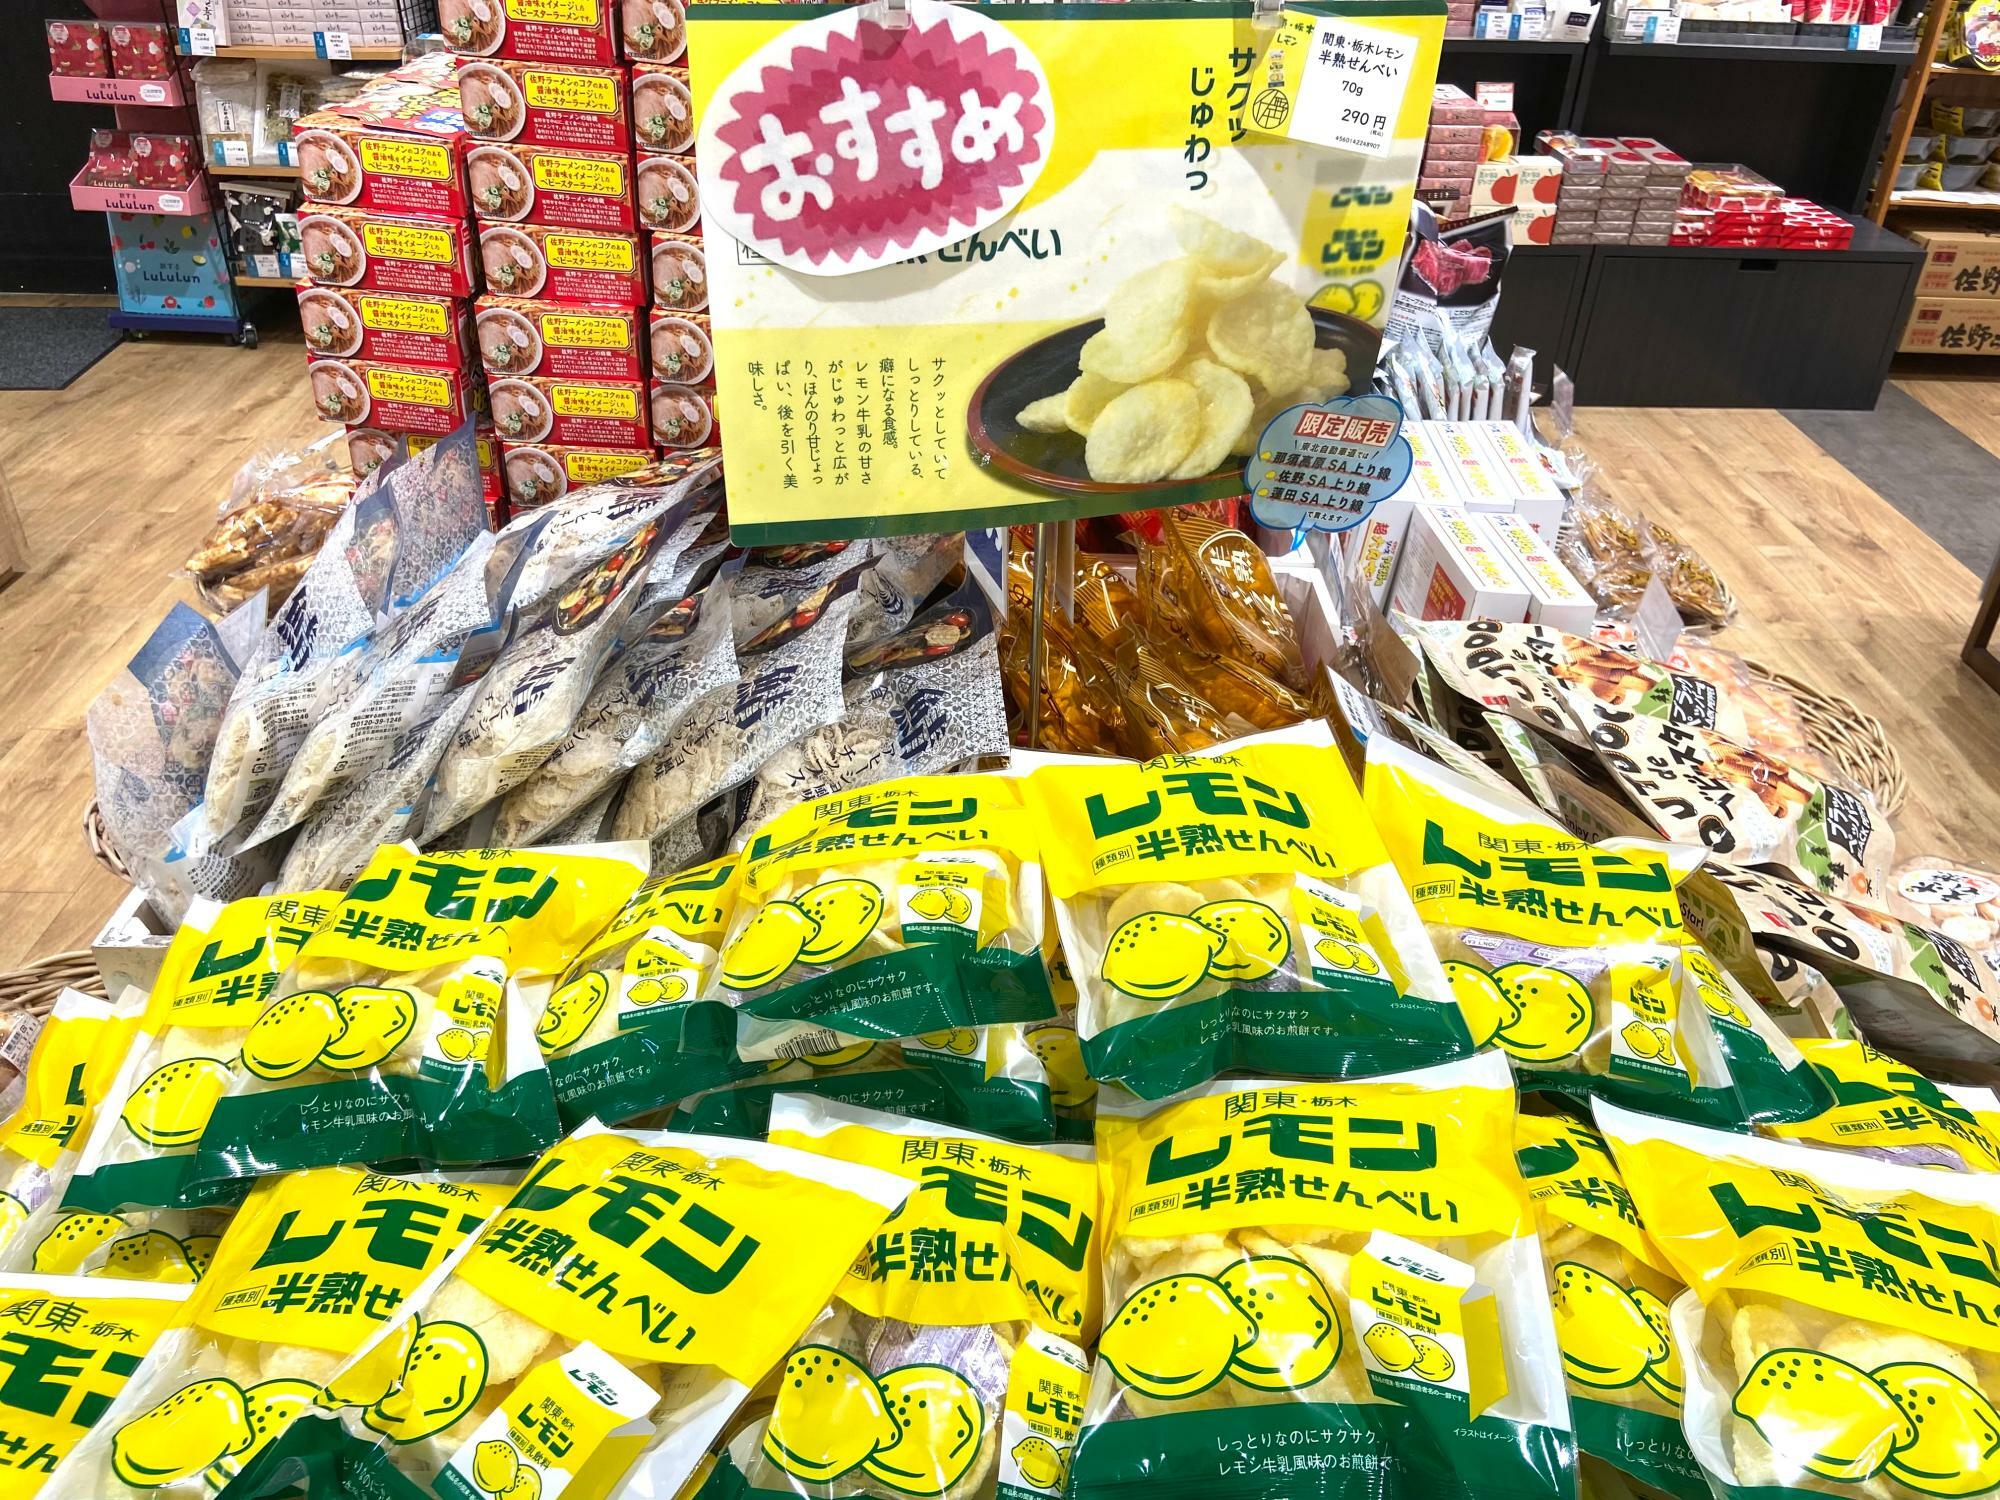 「関東・栃木レモン 半熟せんべい」も人気商品